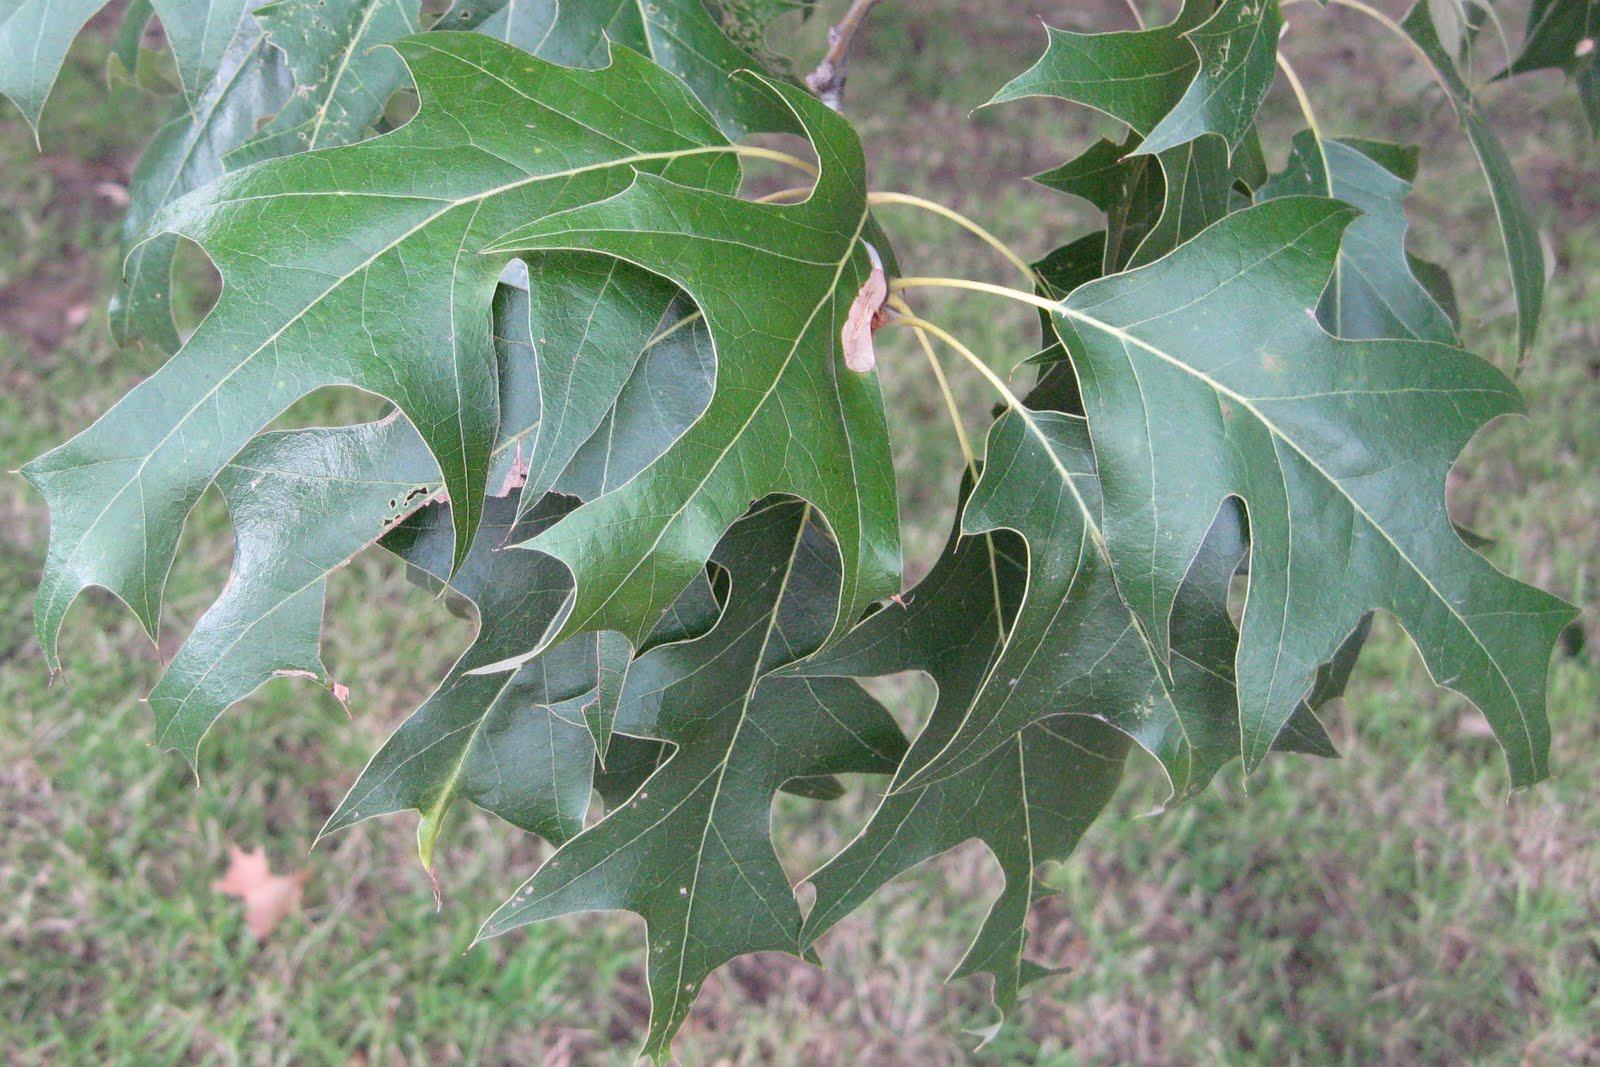 Centenary College Arboretum: Quercus falcata
